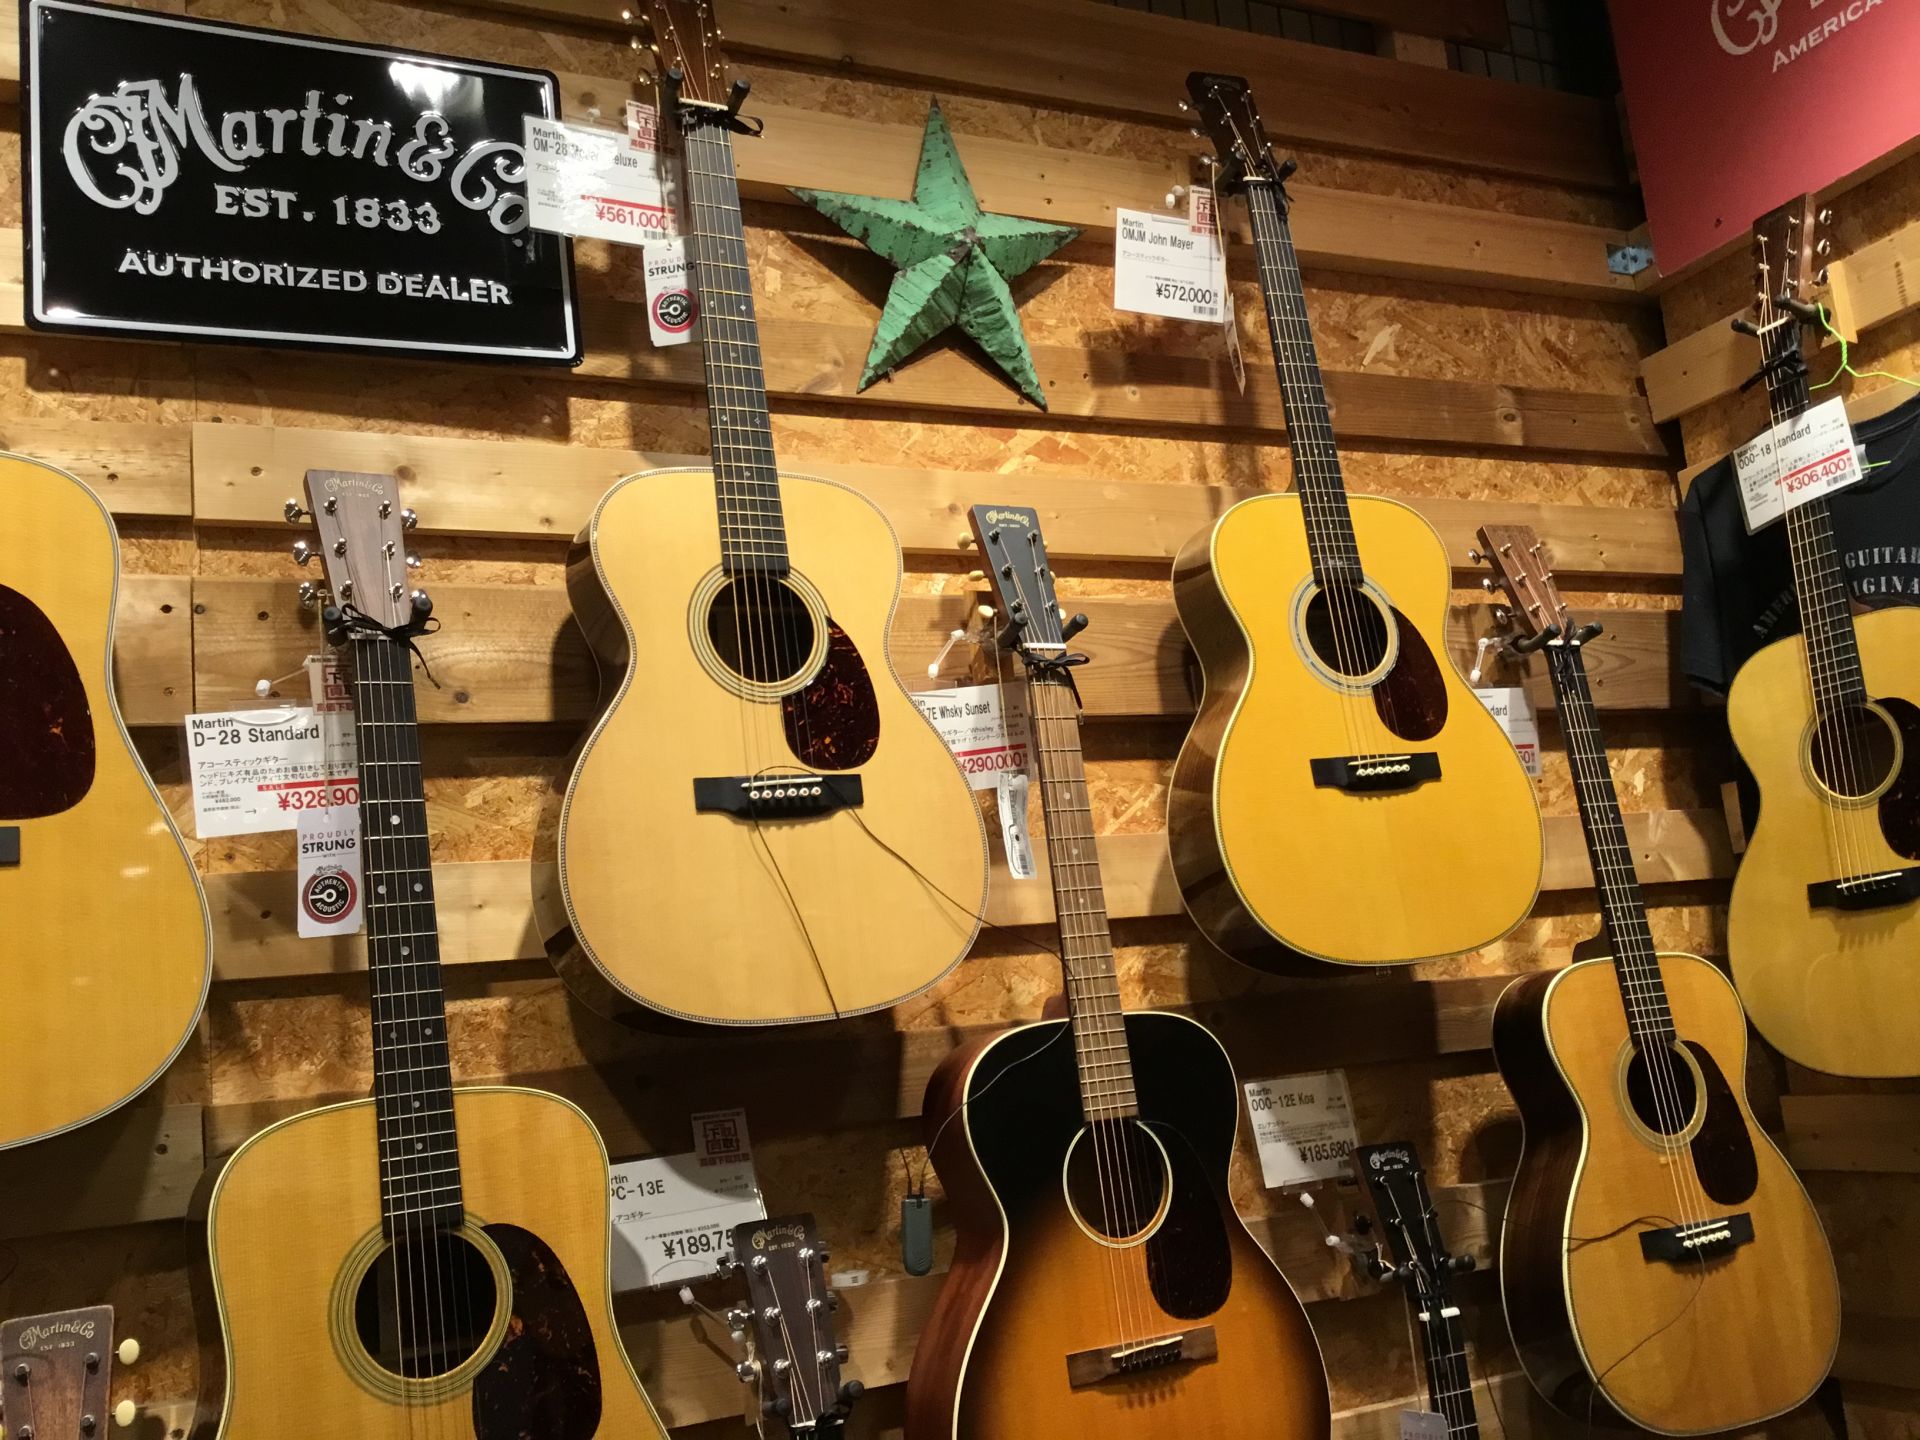 *170年以上続くアコースティックギターのトップブランド「Martin」 マーティンは、その長い歴史と数えきれないほど多くの画期的な発明により、世界中のアコースティック・ギター・メーカーが「標準」と呼ぶギターを作り上げてきた、まさに王道を行くギターメーカーです。 数多くのミュージシャンに愛用され、ギ […]